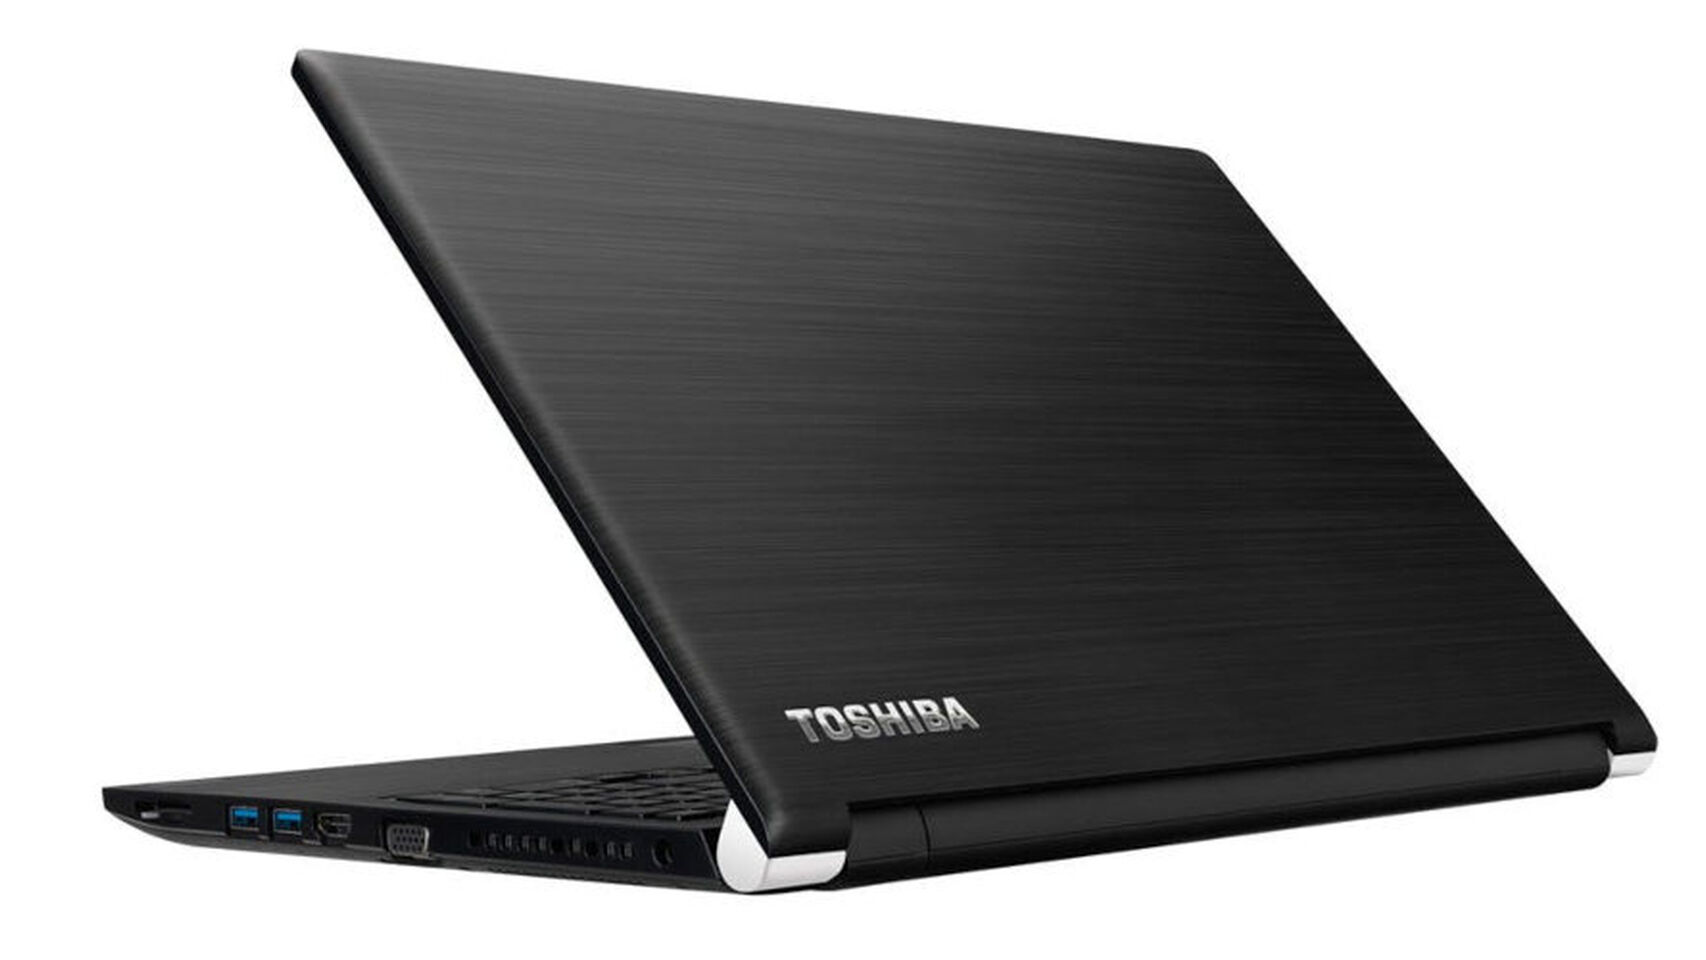 Toshiba abandona el mercado de las computadoras portátiles después de 35 años historia.